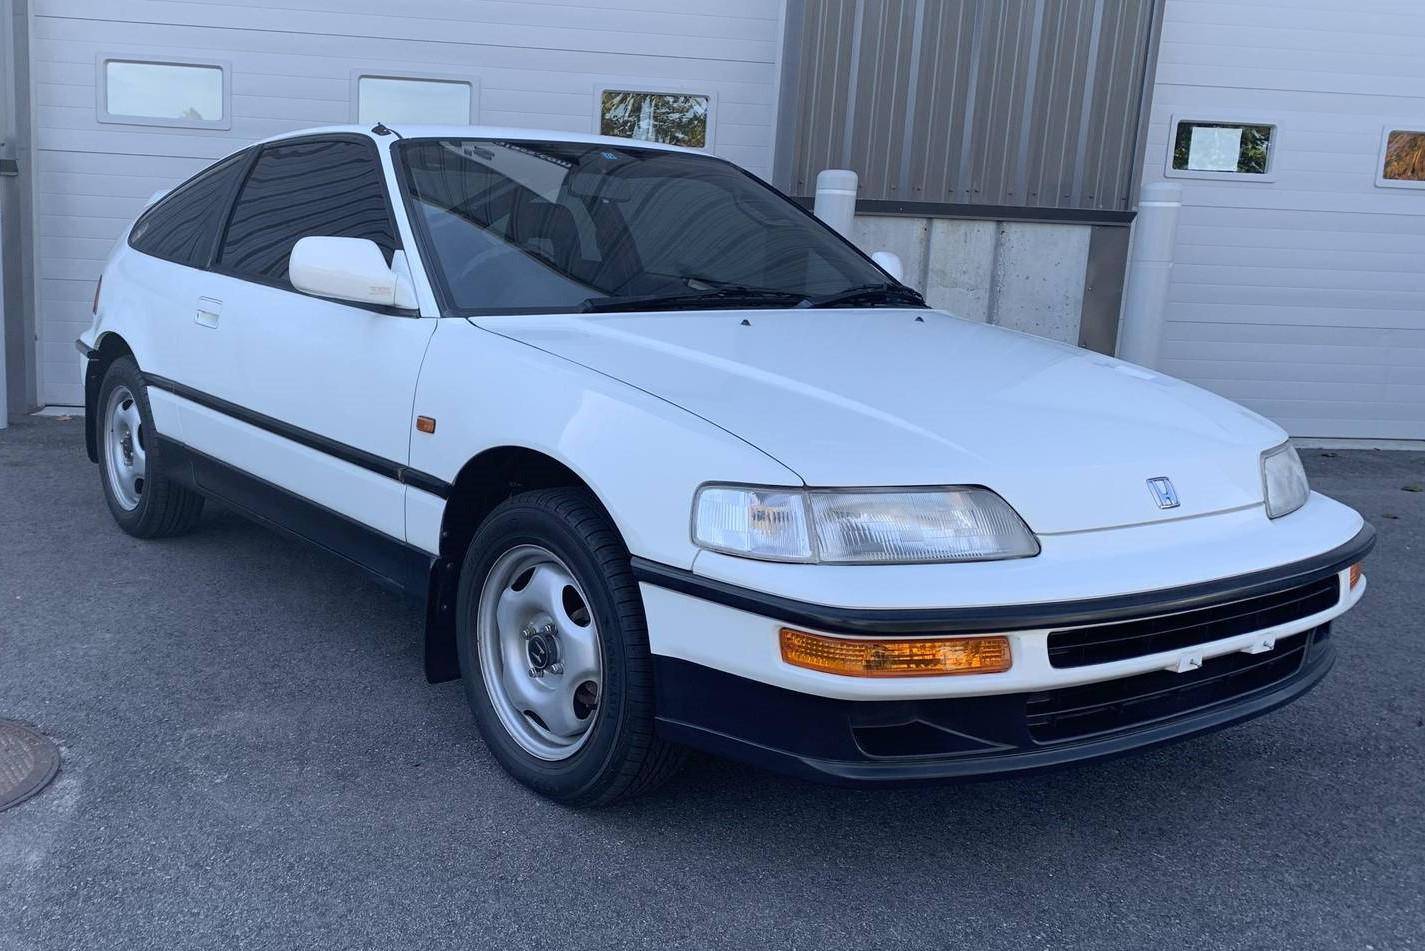 logboek delen heel veel 1989 Honda CRX SiR auction - Cars & Bids